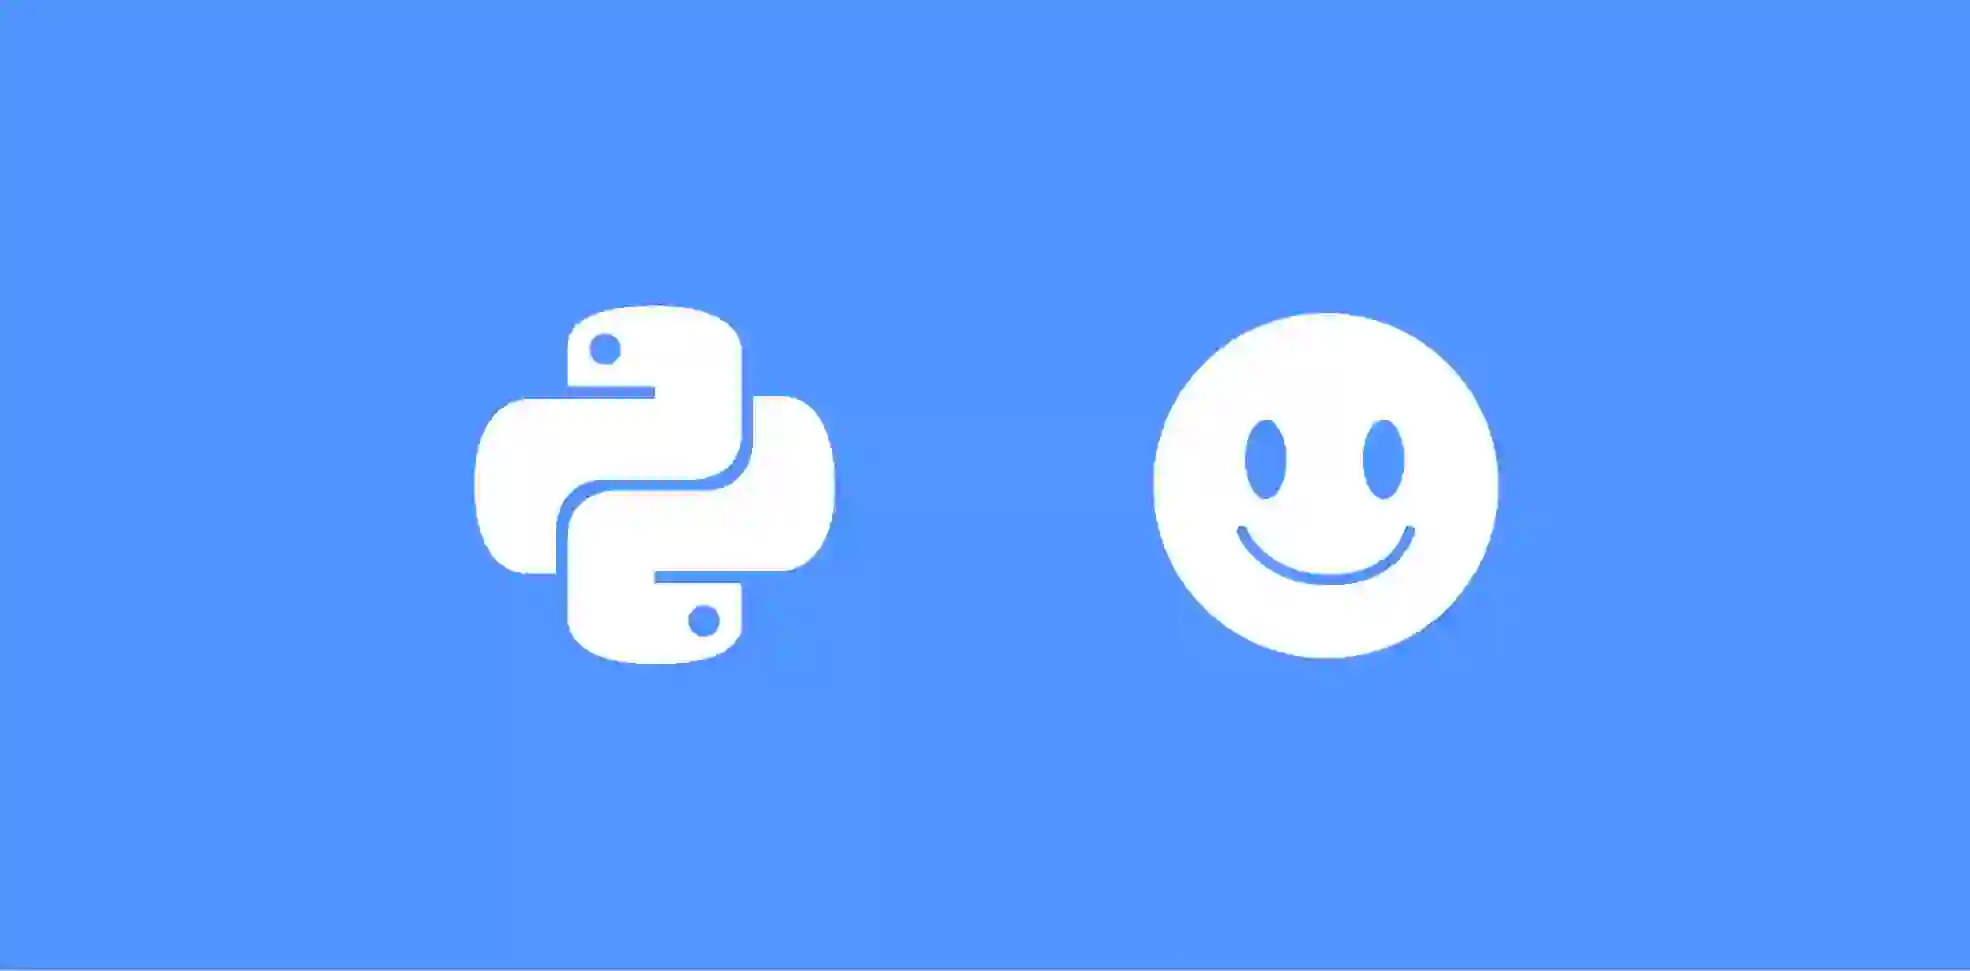 logo del programa python y emoji sonriente en un fondo azul